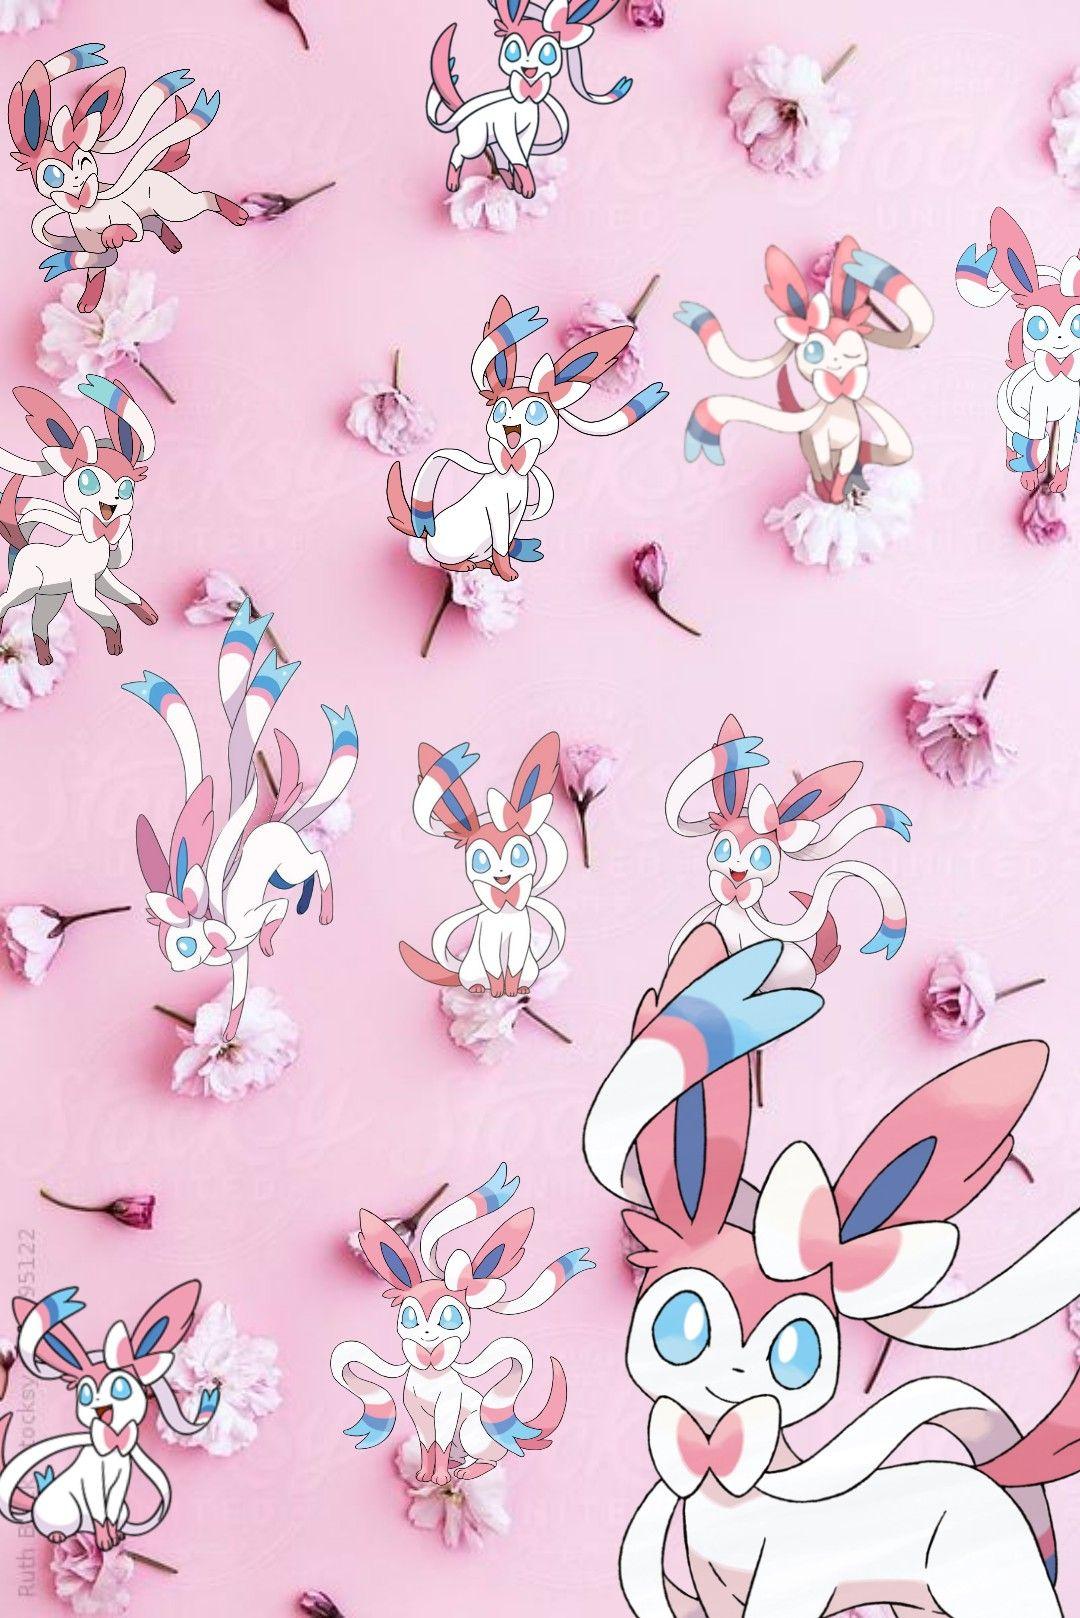 Flower sylveon wallpaper♡♡. Cute pokemon wallpaper, Pokemon